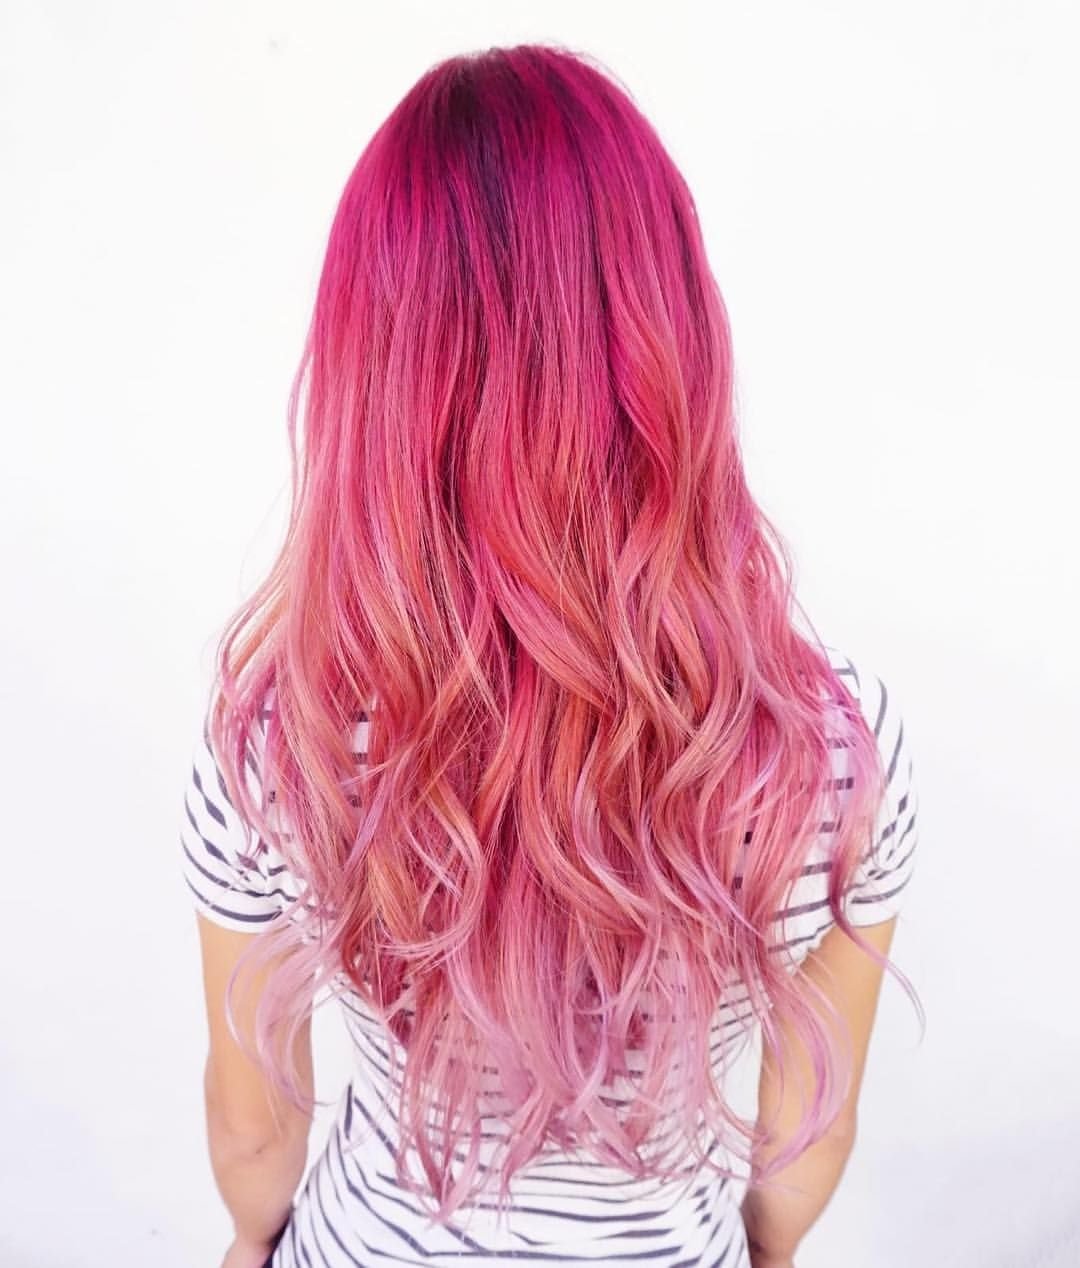 Думы о том, чтобы покрасить волосы в розовый